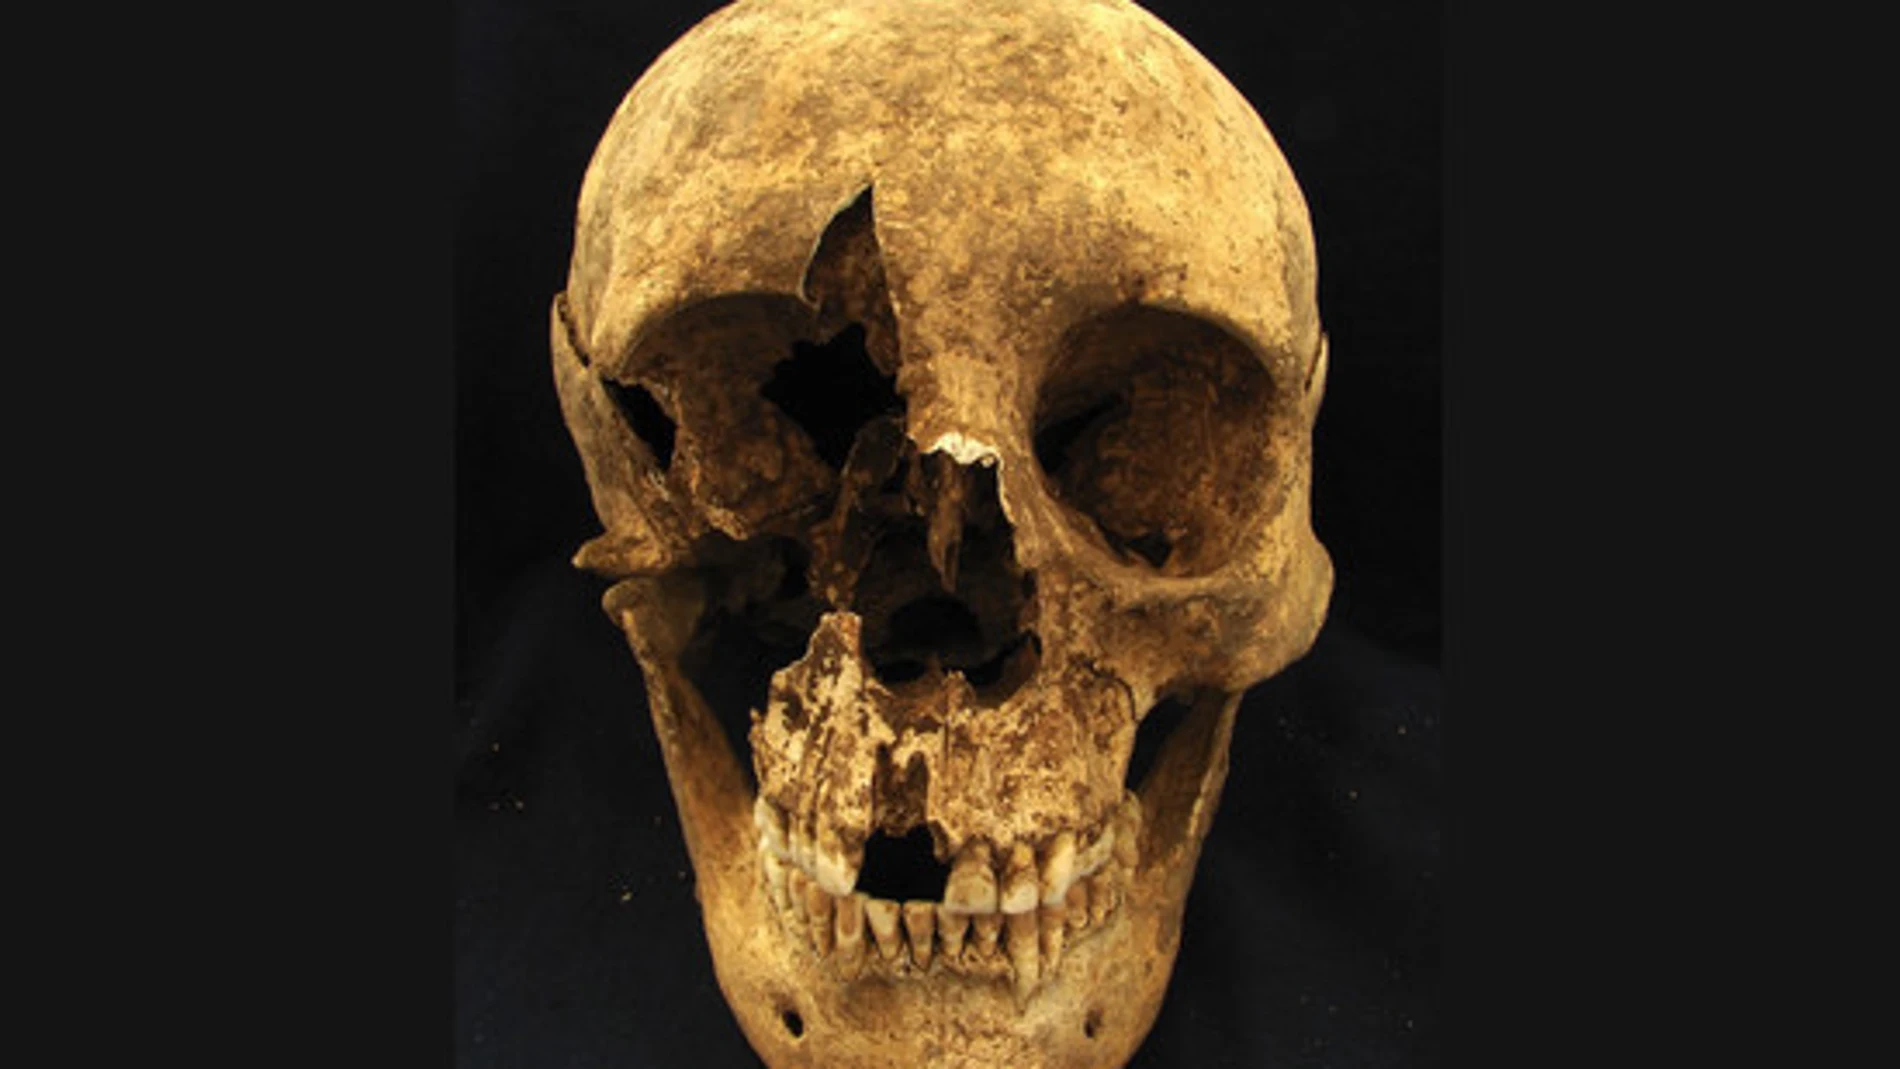 Calavera de uno de los esqueletos hallados en el cementerio romano de Casal Bertone (Italia)